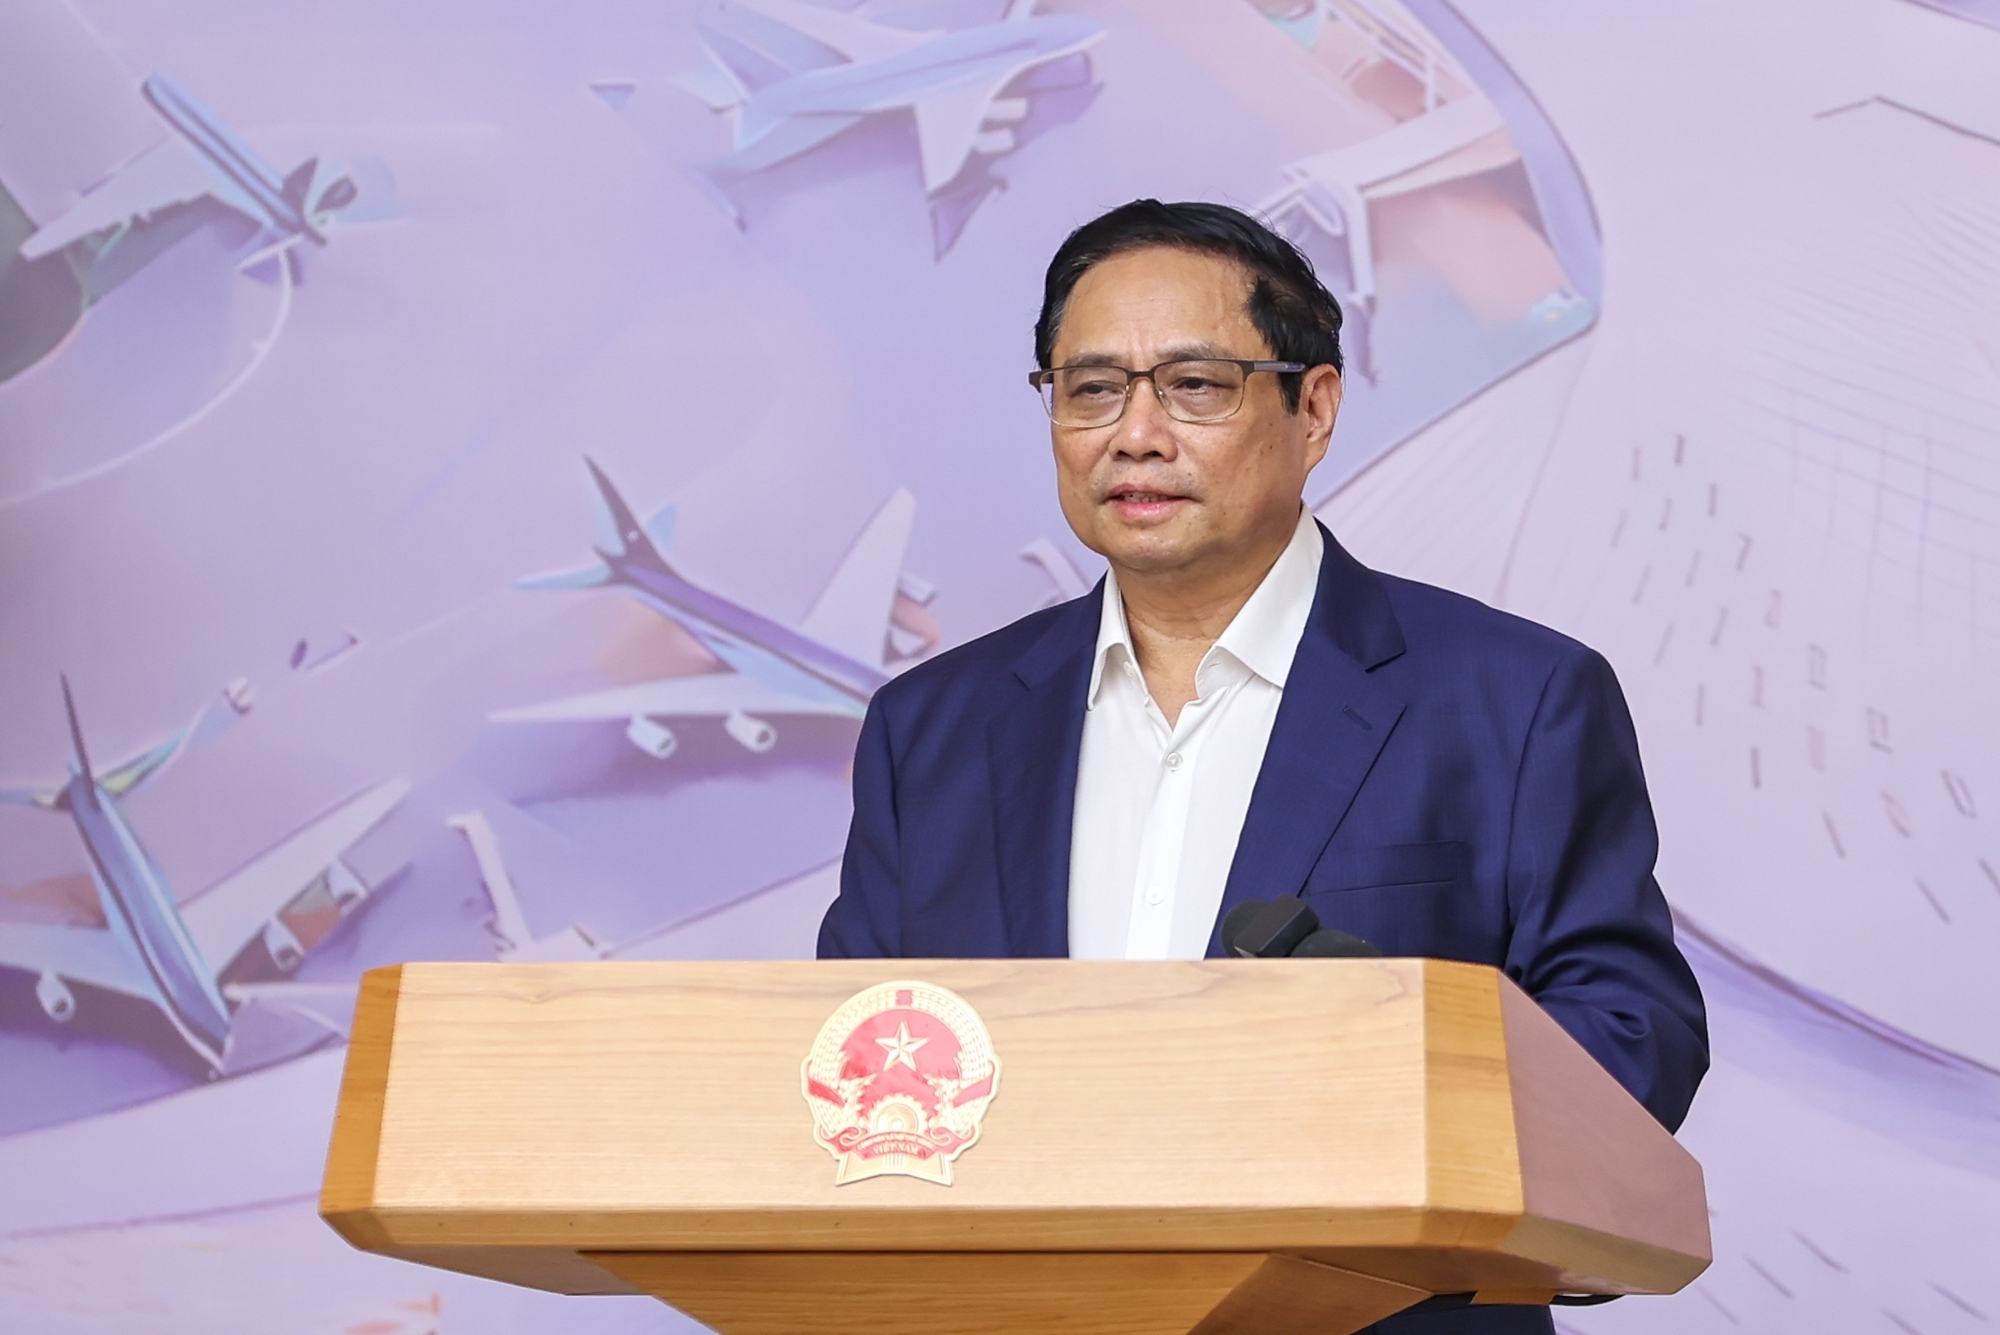 Thủ tướng Phạm Minh Chính: Không được "quyền anh, quyền tôi" để thúc đẩy các dự án quan trọng quốc gia